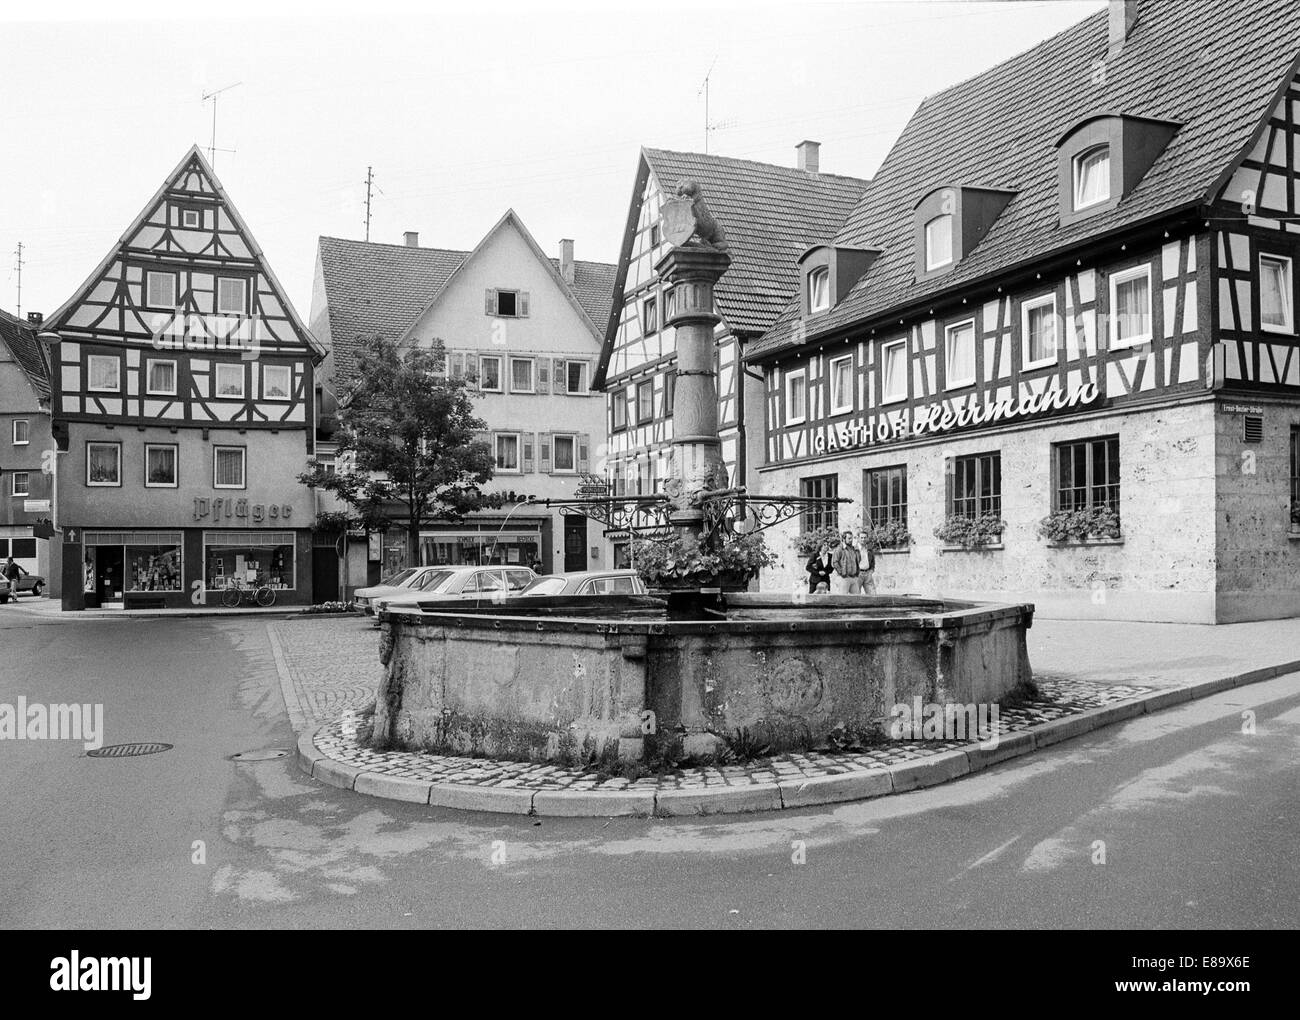 Achtziger Jahre, Marktbrunnen Und Fachwerkhaeuser am Marktplatz von Muensingen, sch.ools.it Alb, Baden-Württemberg Stockfoto